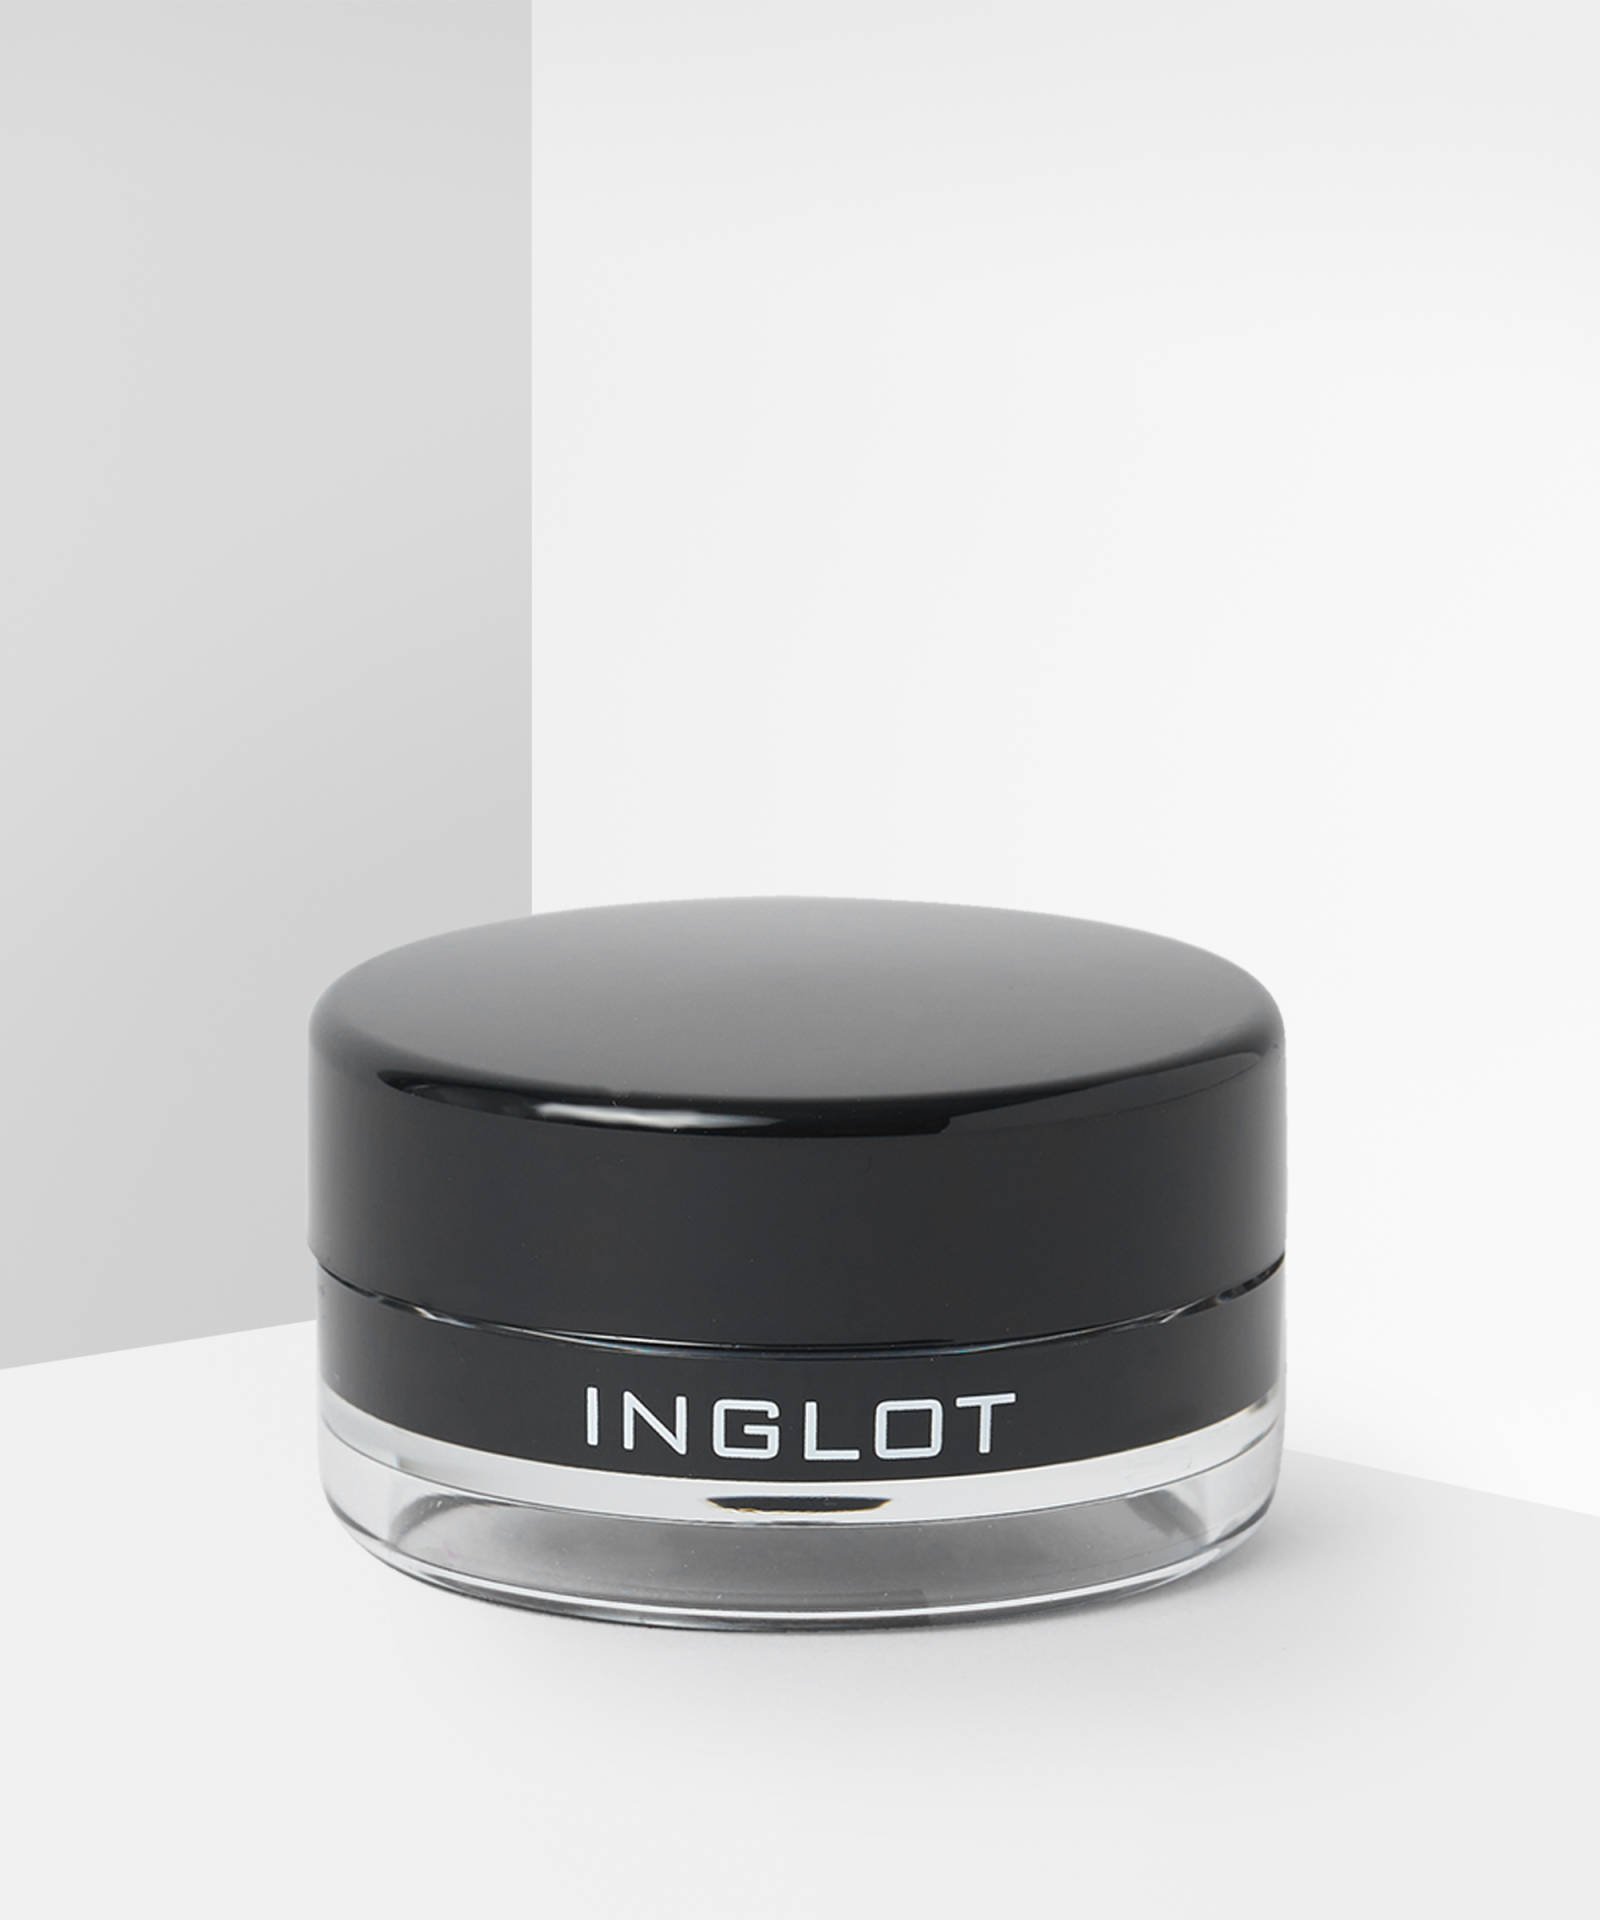 inglot liner